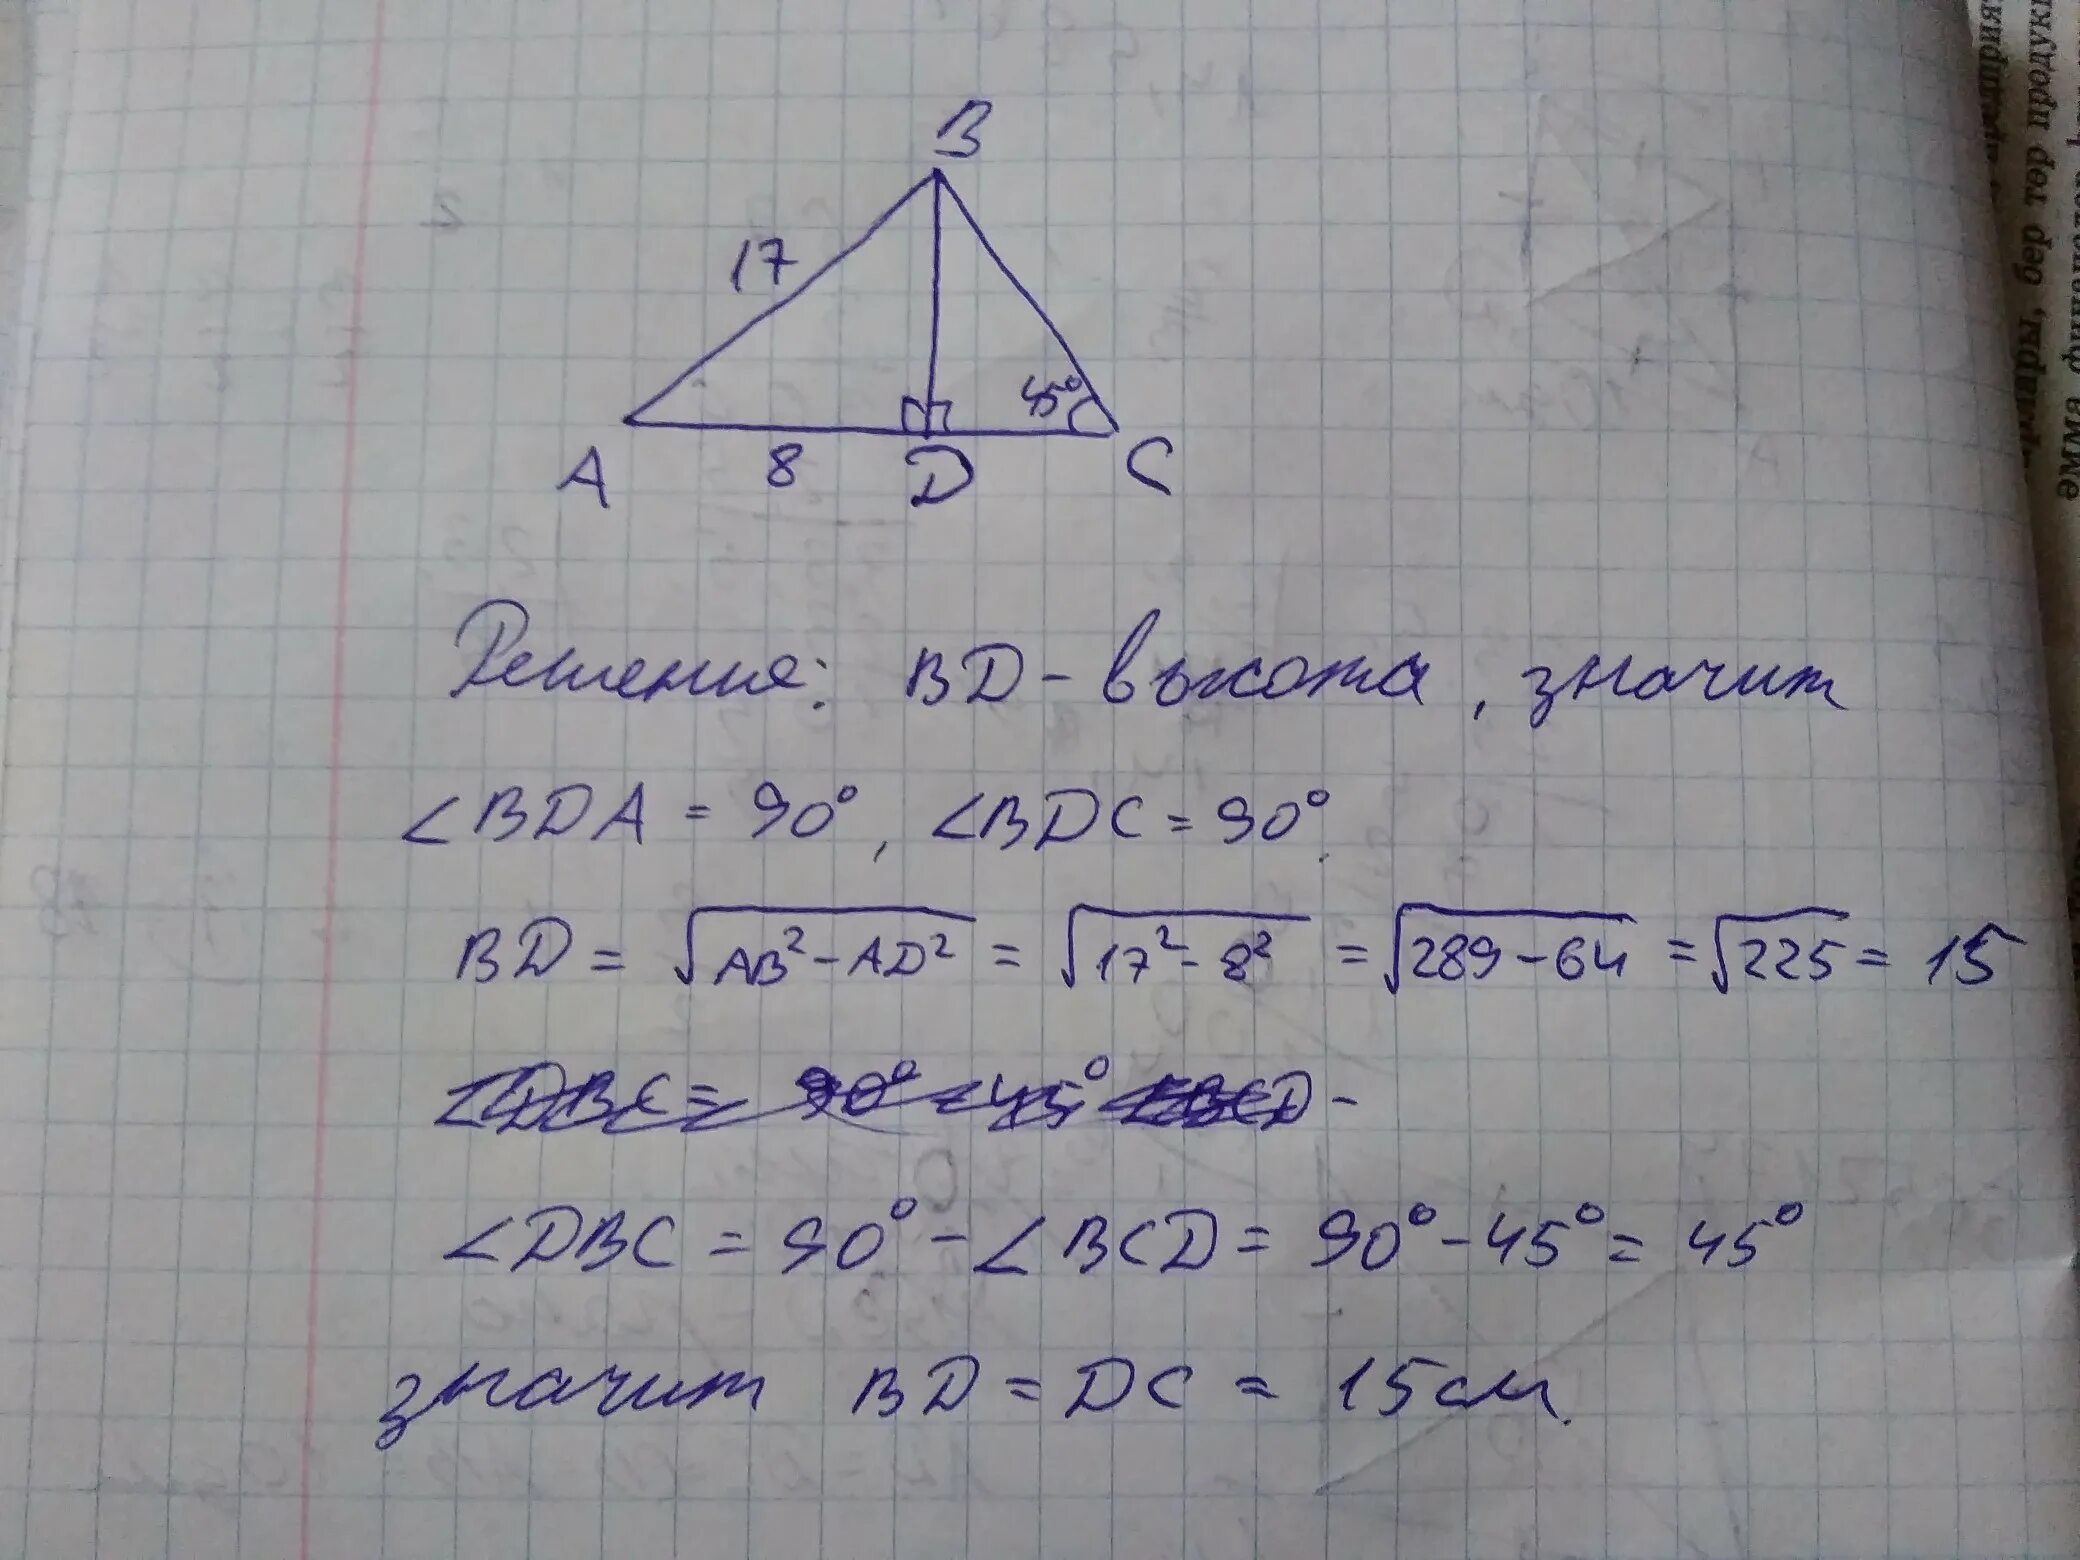 Ab равно 12 сантиметров найти bc. Найти bd в треугольнике. В треугольнике ABC на стороне AC. Высота bd треугольника ABC. Высота вс треугольника АВС делит.